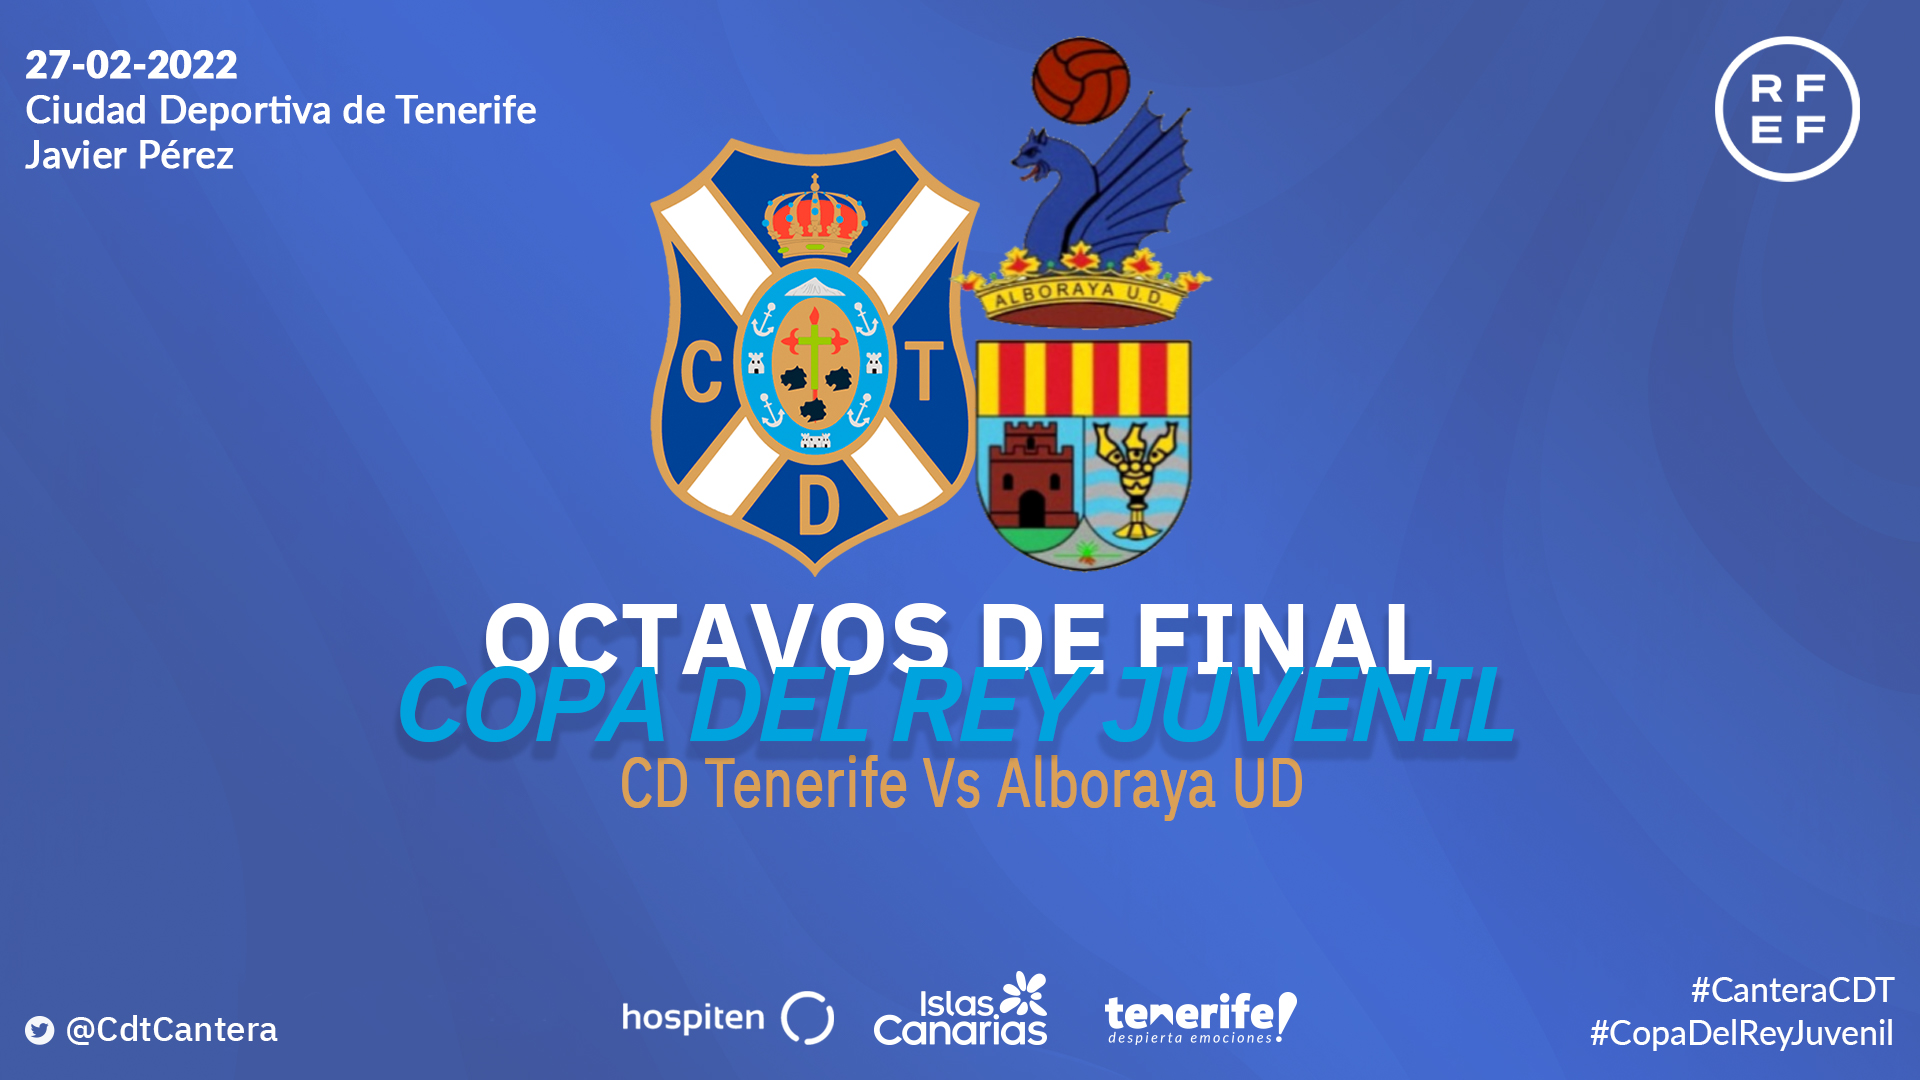 El Alboraya UD valenciano, rival del CD Tenerife en los octavos de la Copa del Rey juvenil